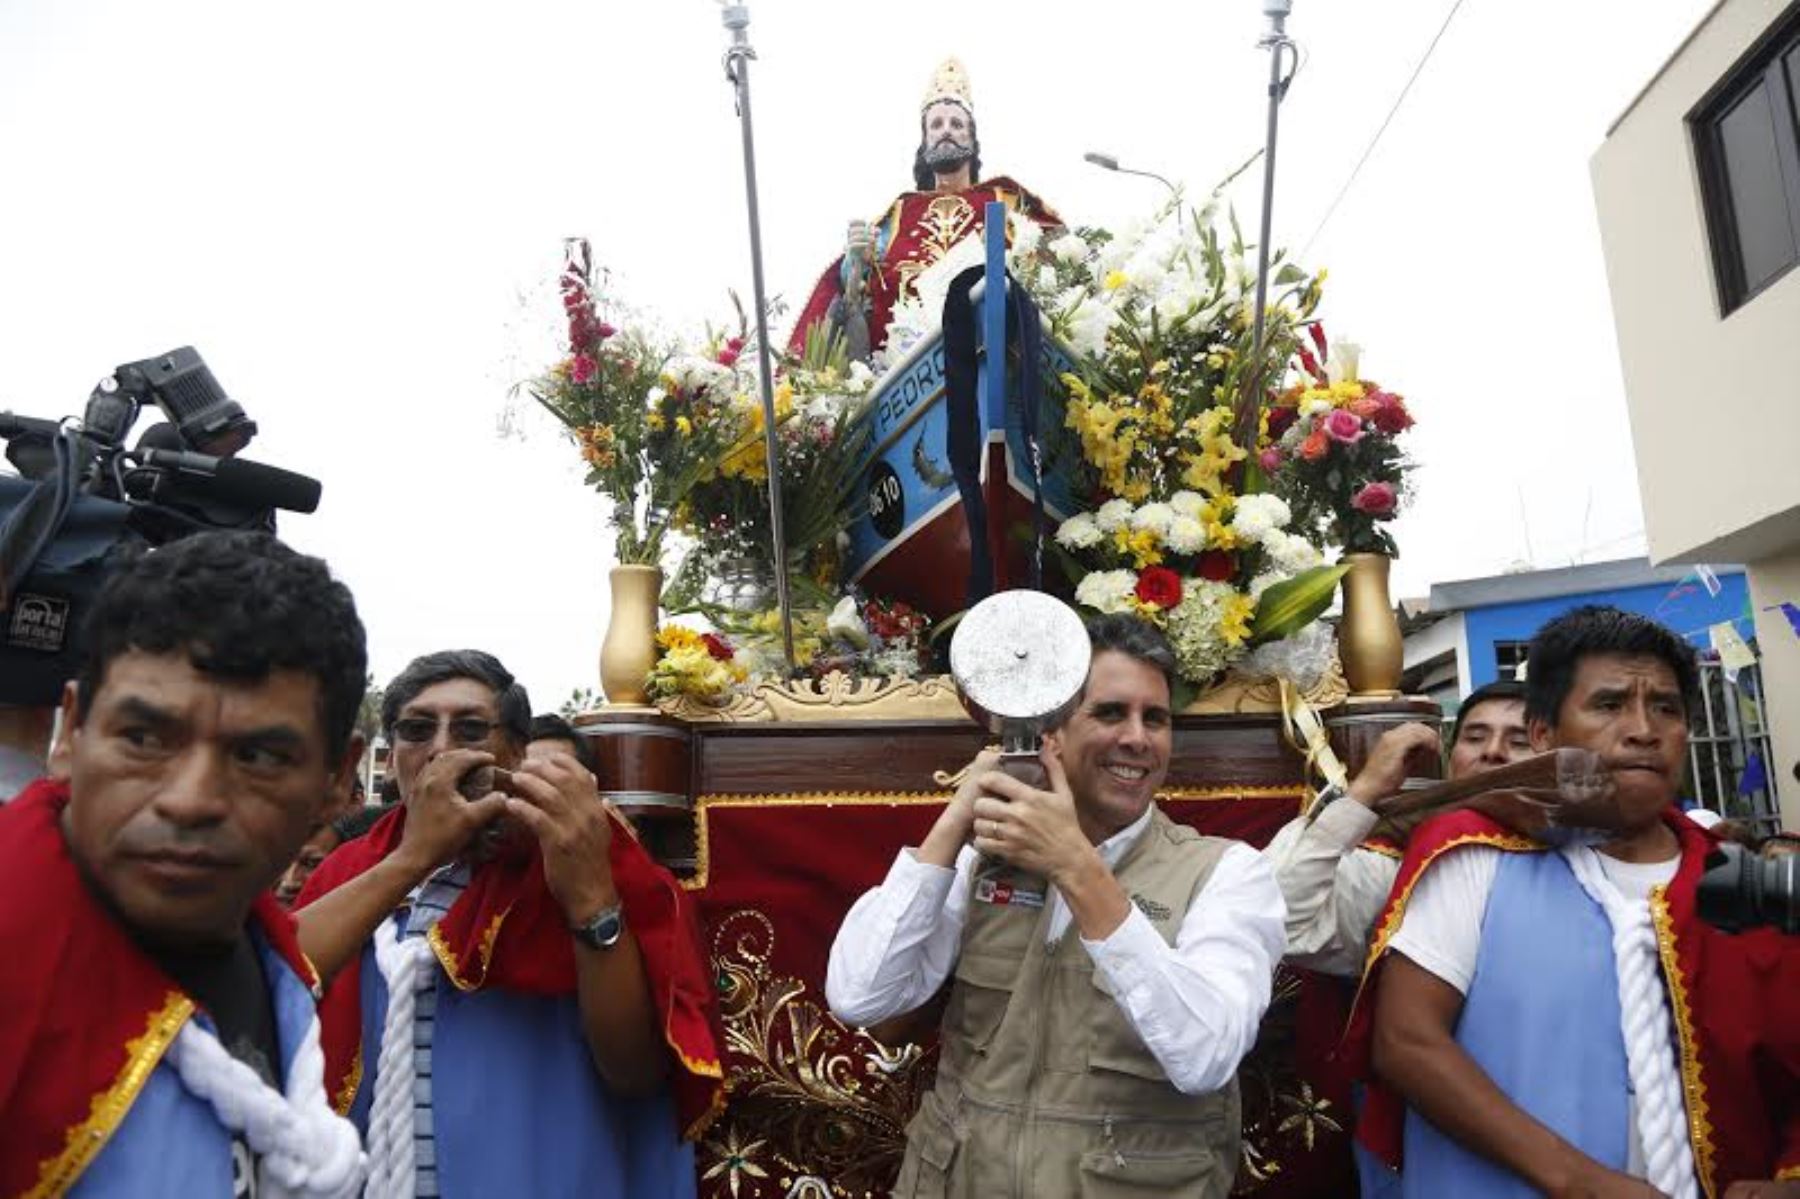 Ministro de la Producción alzó en hombros sagrada  imagen de San Pedro, en Pucusana